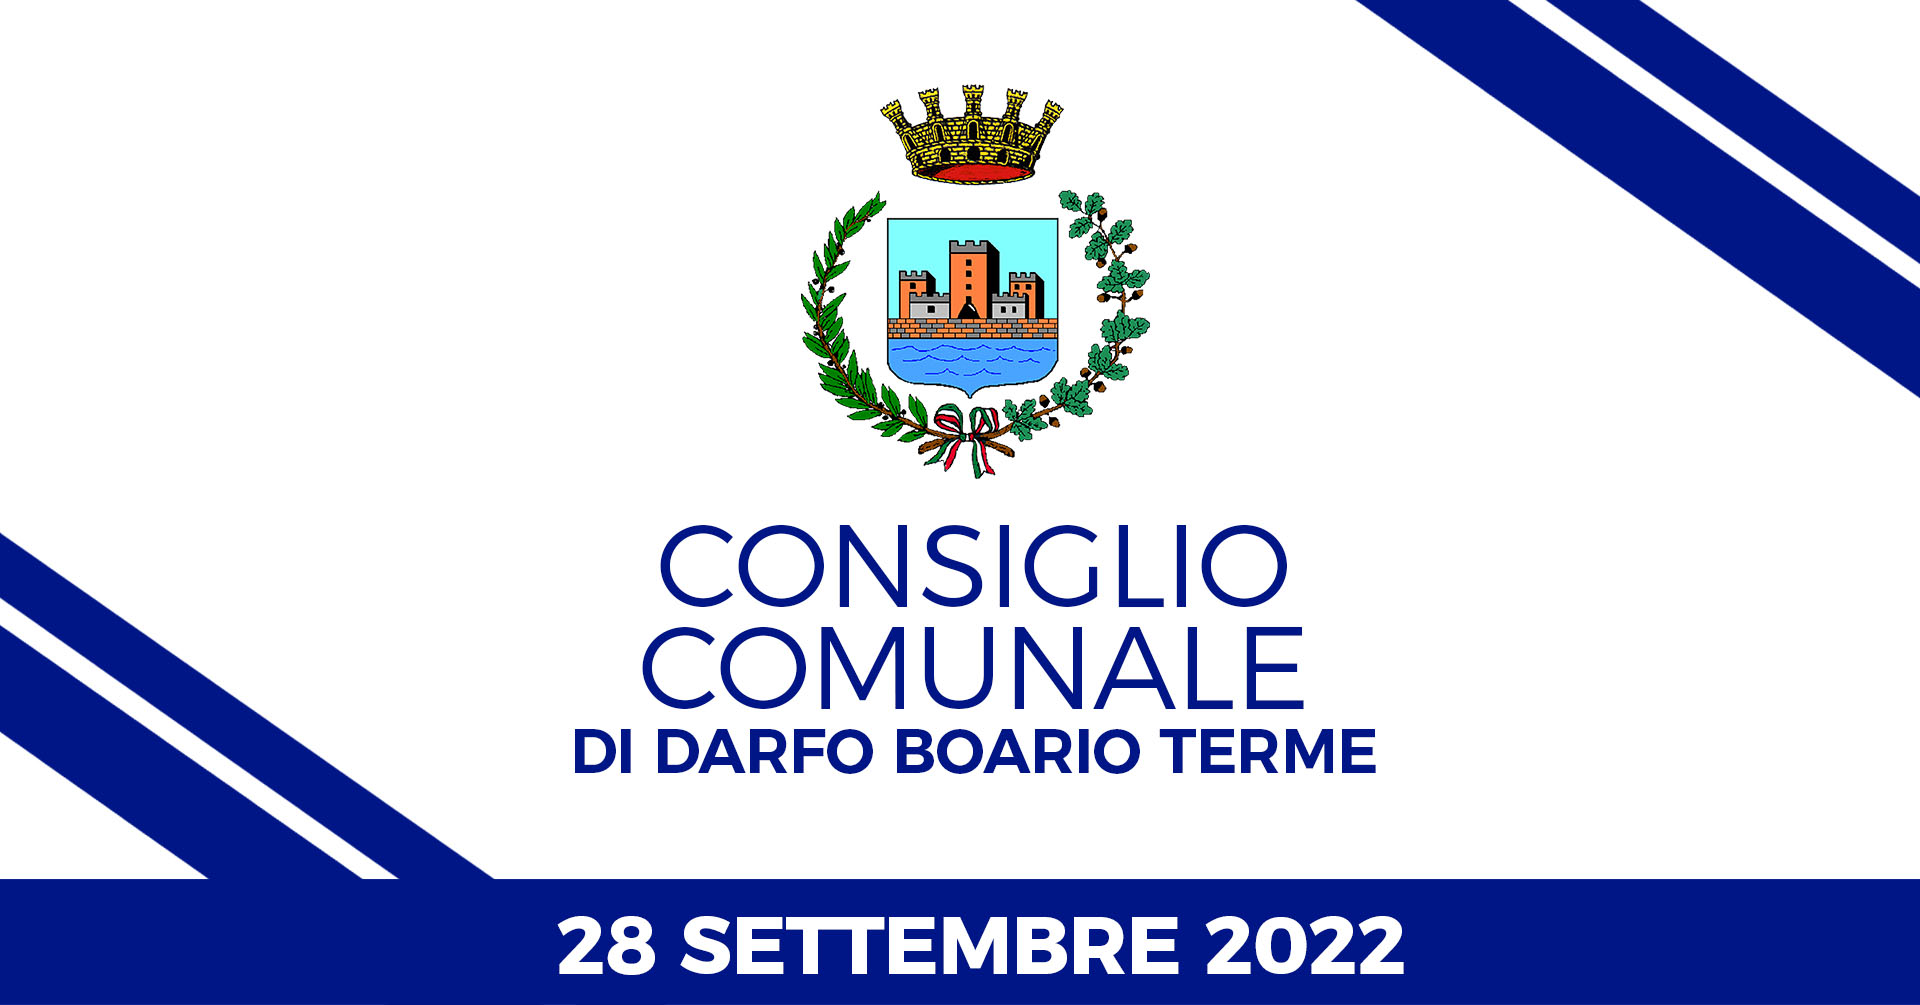 Consiglio Comunale di Darfo Boario Terme del 28 settembre 2022